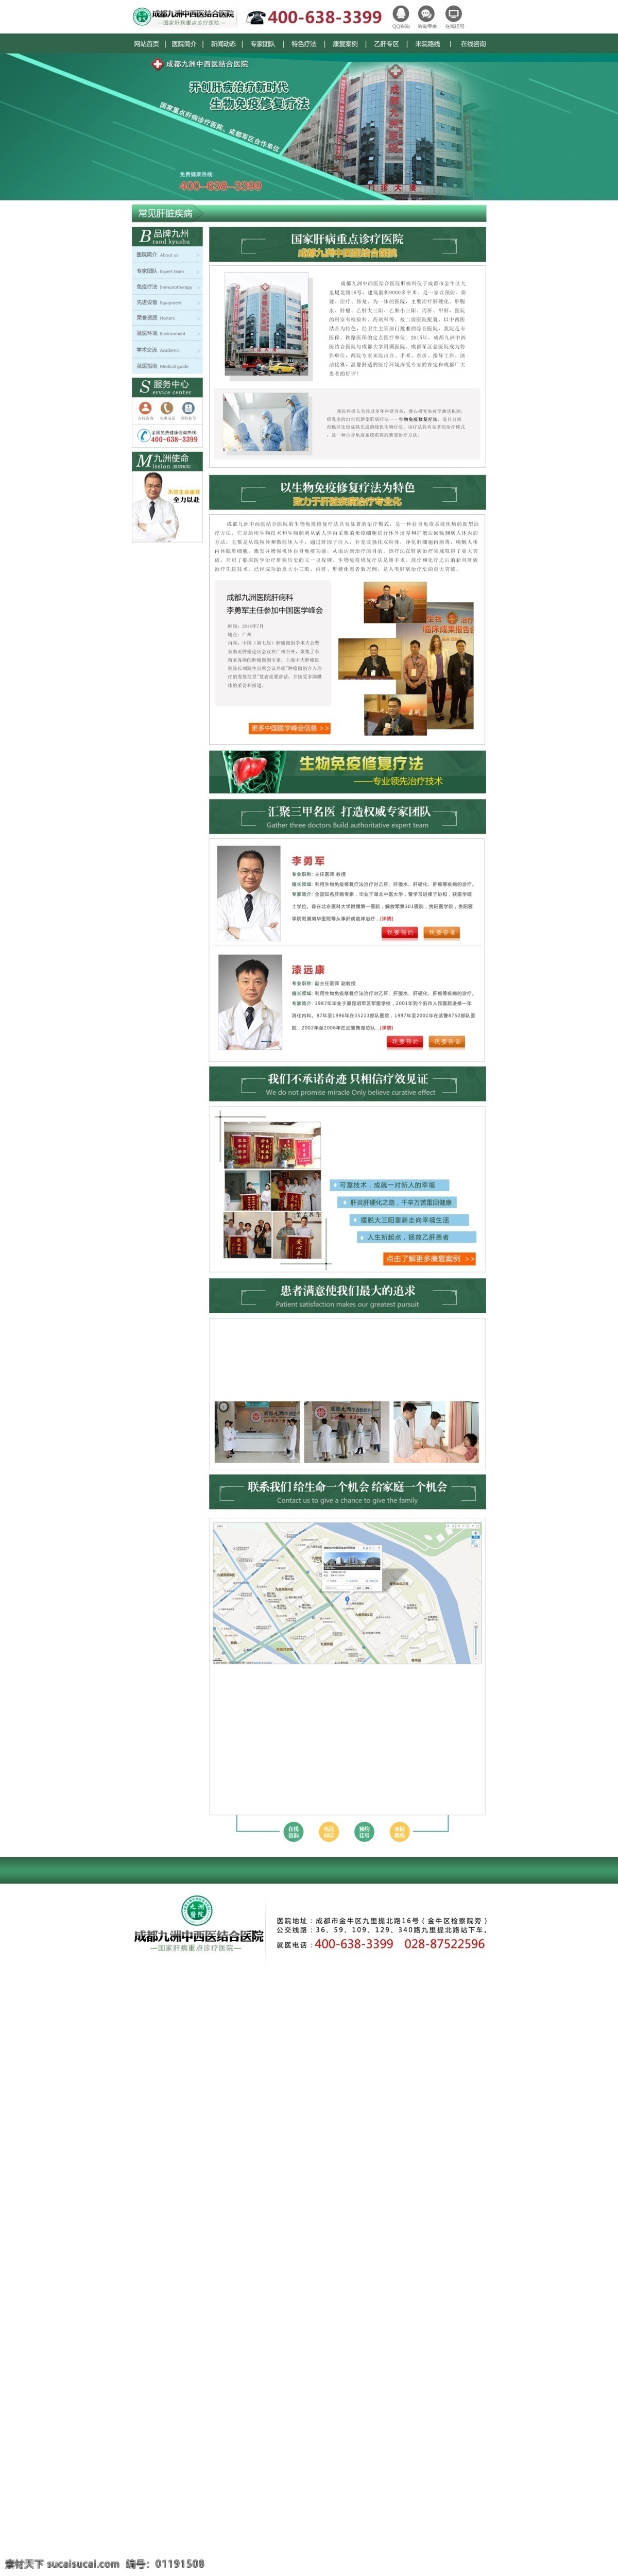 医院品牌设计 医院 品牌 网页设计 肝病 医疗 医院专题 专题 专题页面 医院疗法 白色